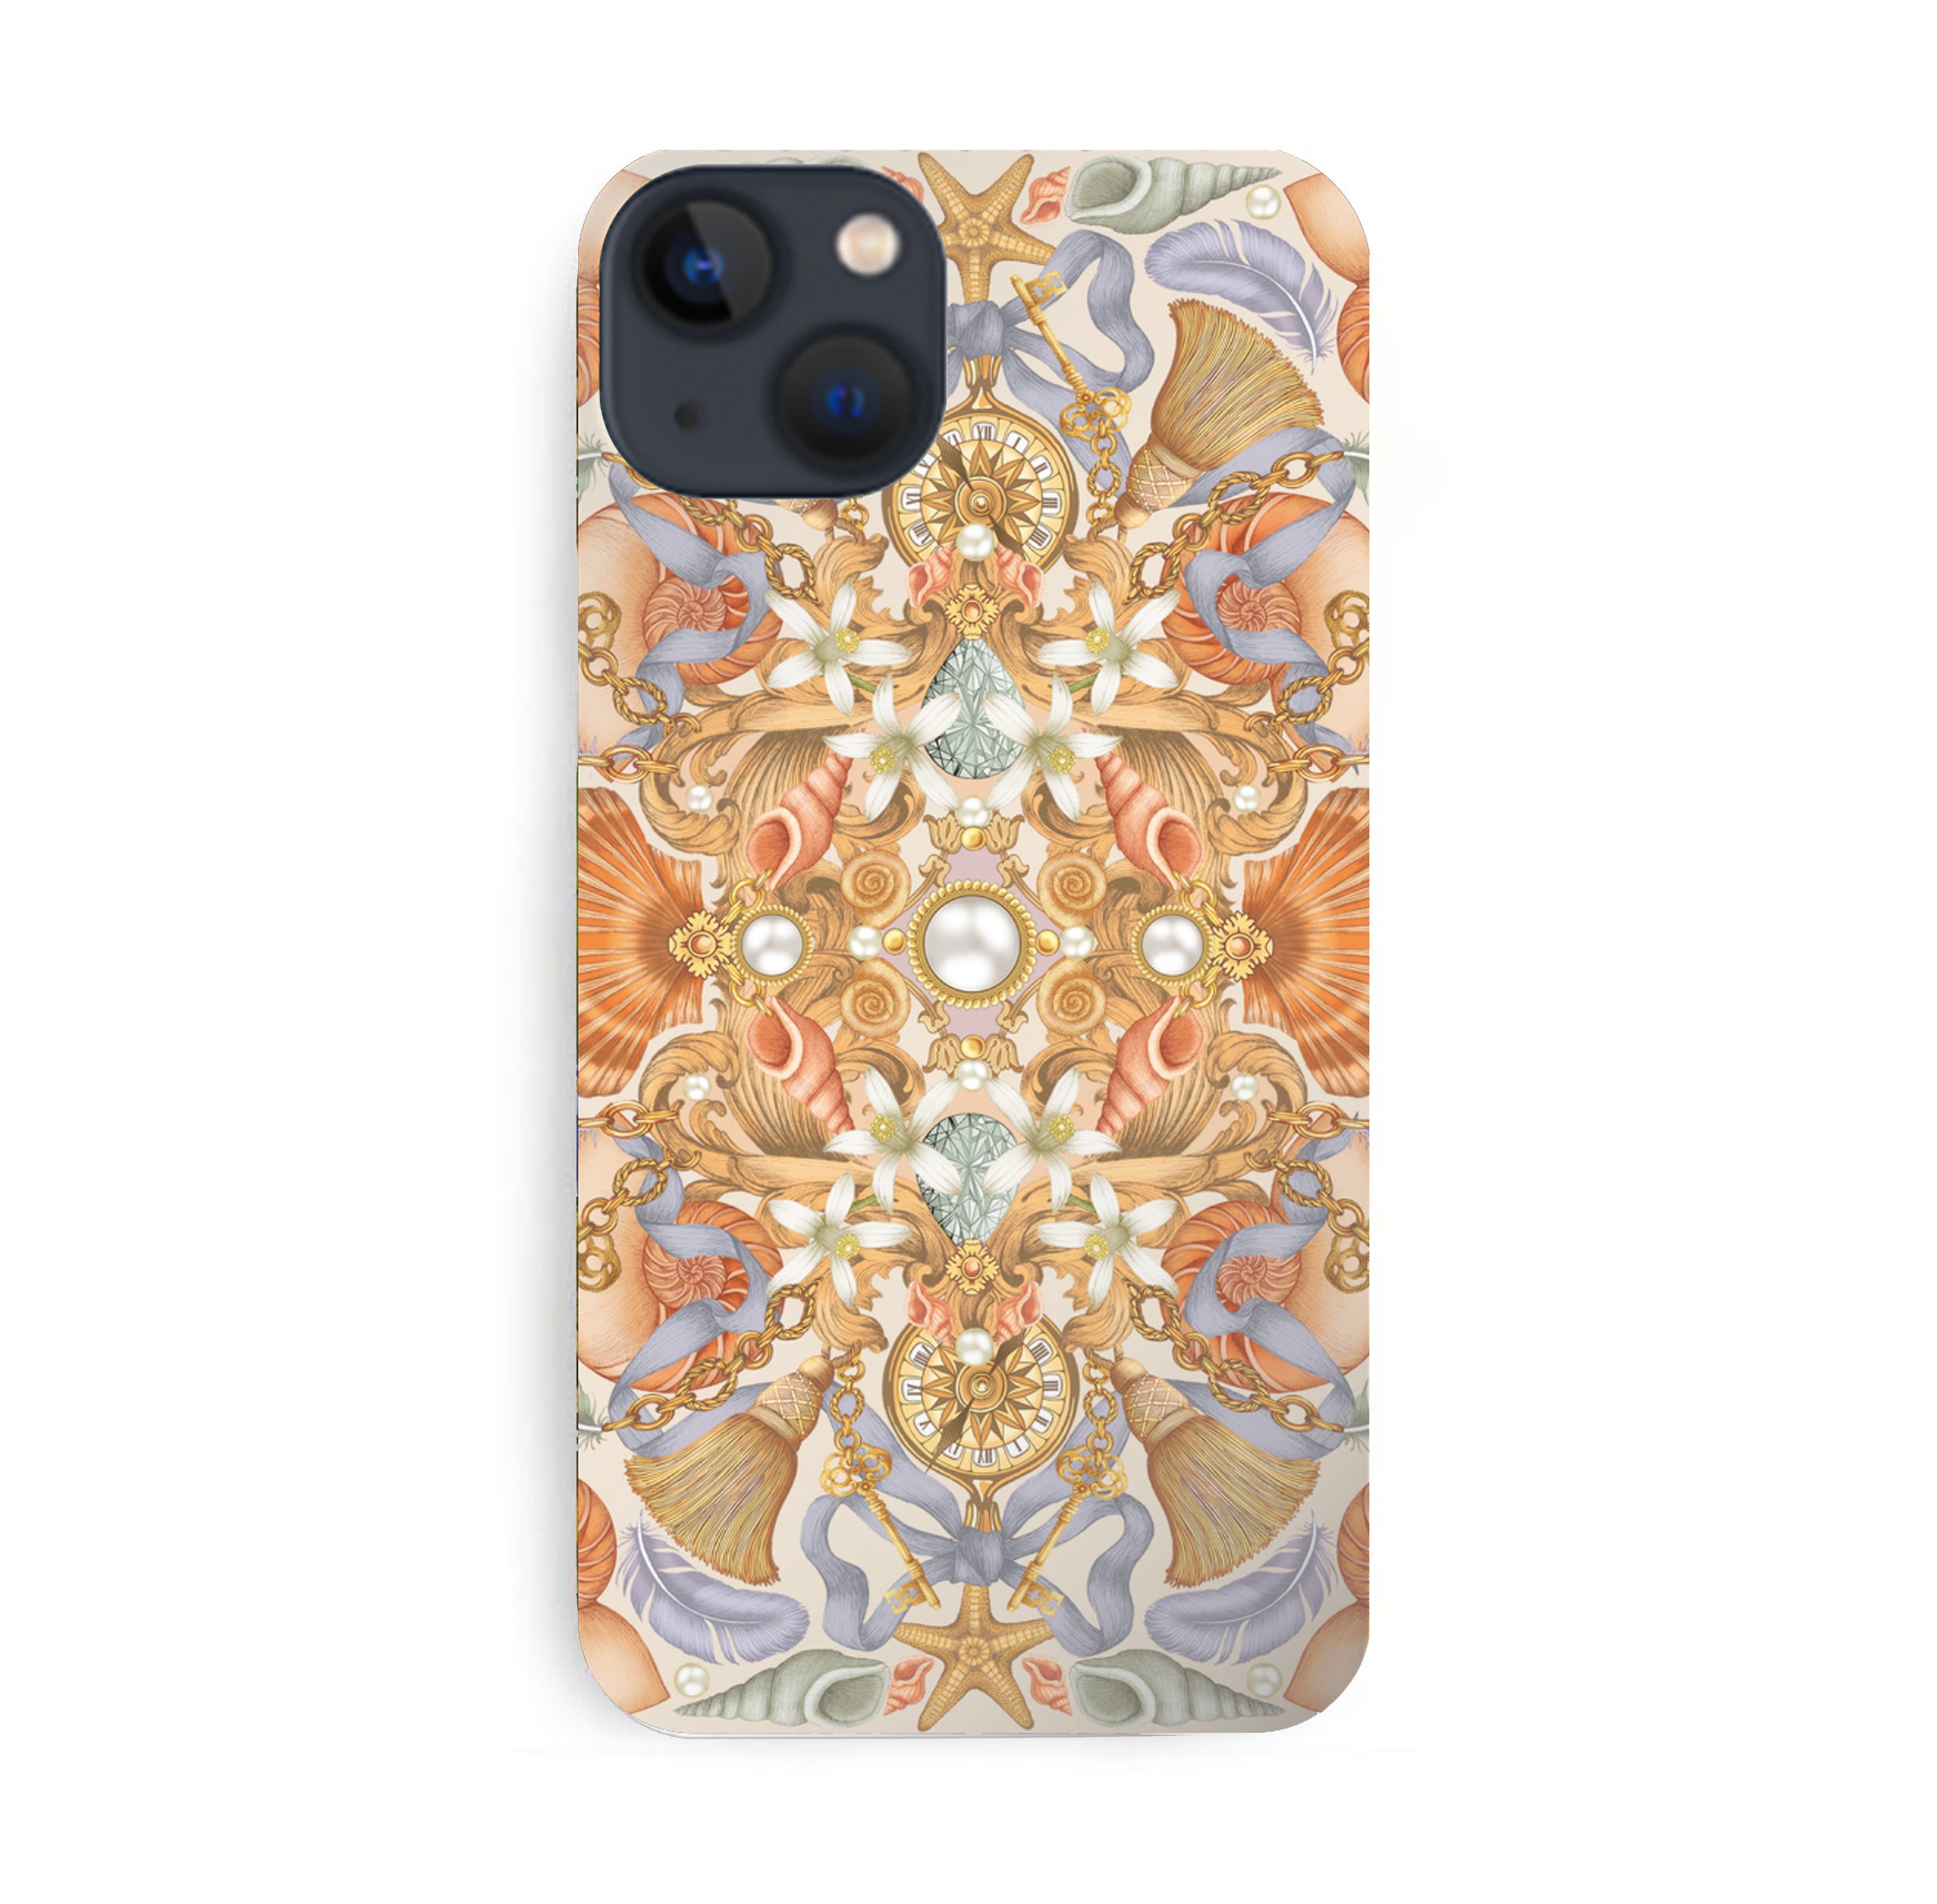 Luxury Phone Case - Shell & Starfish